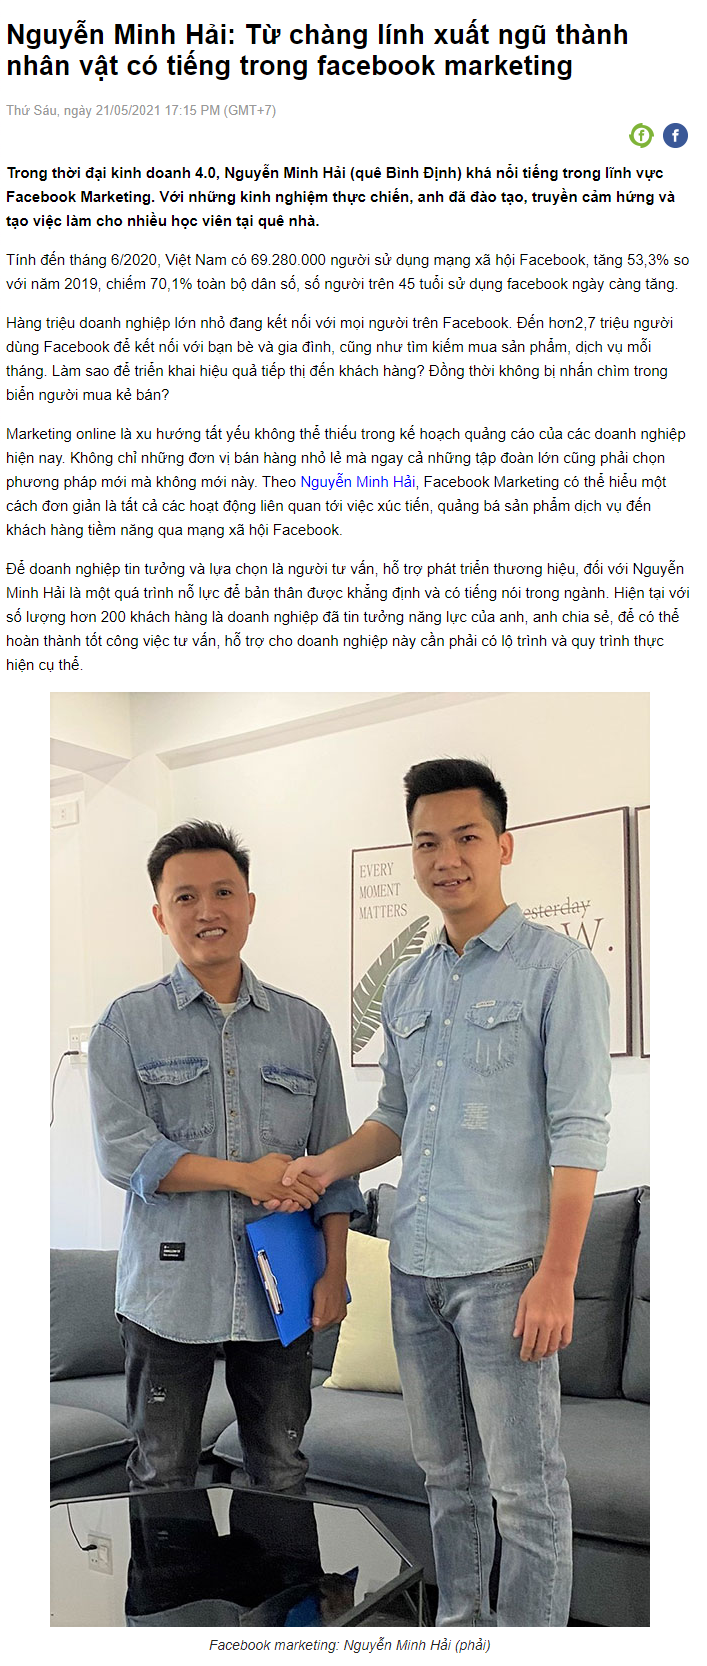 PR thương hiệu cá nhân Nguyễn Minh Hải trên báo 24h.com.vn